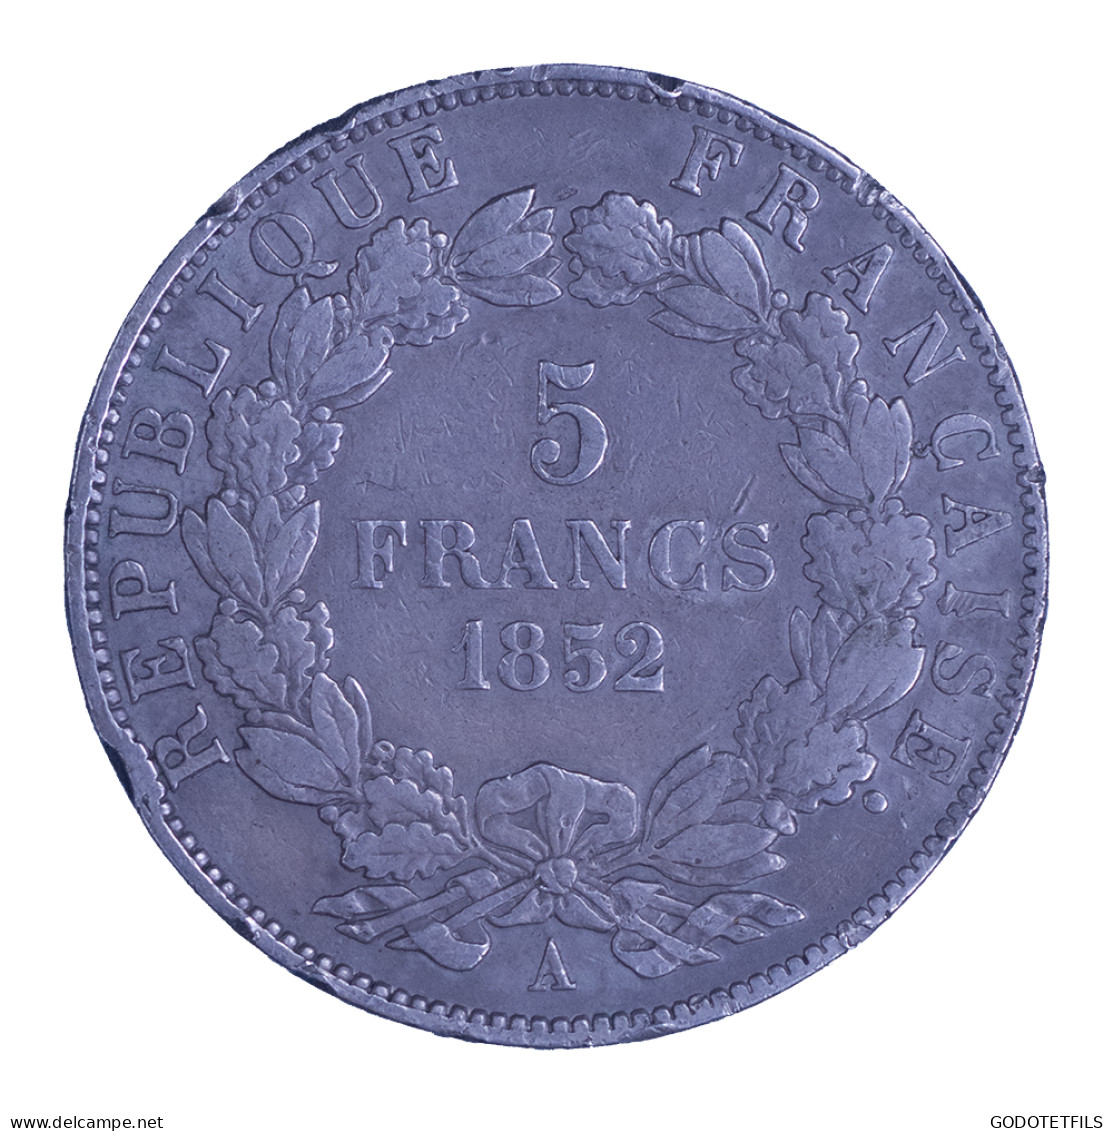 Louis Napoléon Bonaparte-5 Francs 1852 Paris - 5 Francs